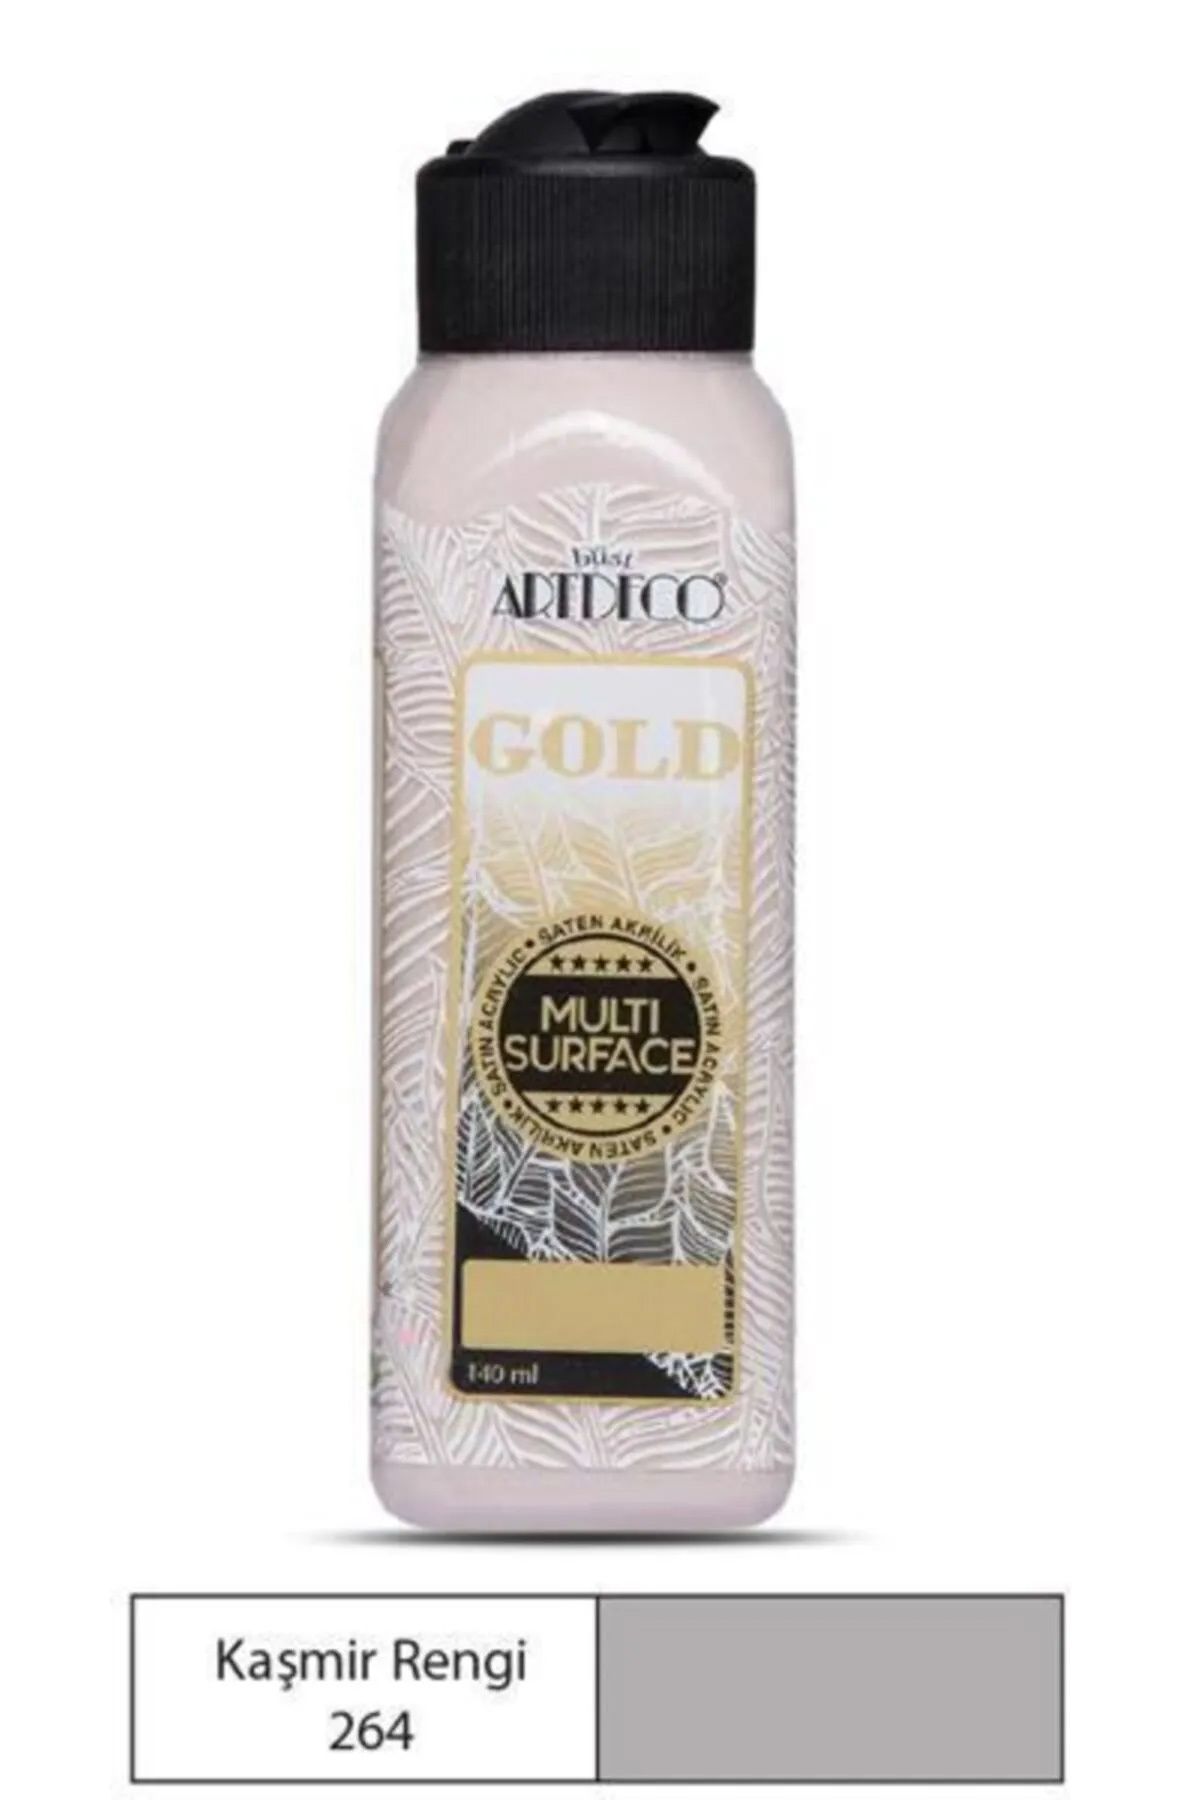 CadGo Artdeco Gold Multi Surface Akrilik Boya 140 ml. 264 KAŞMİR RENGİ